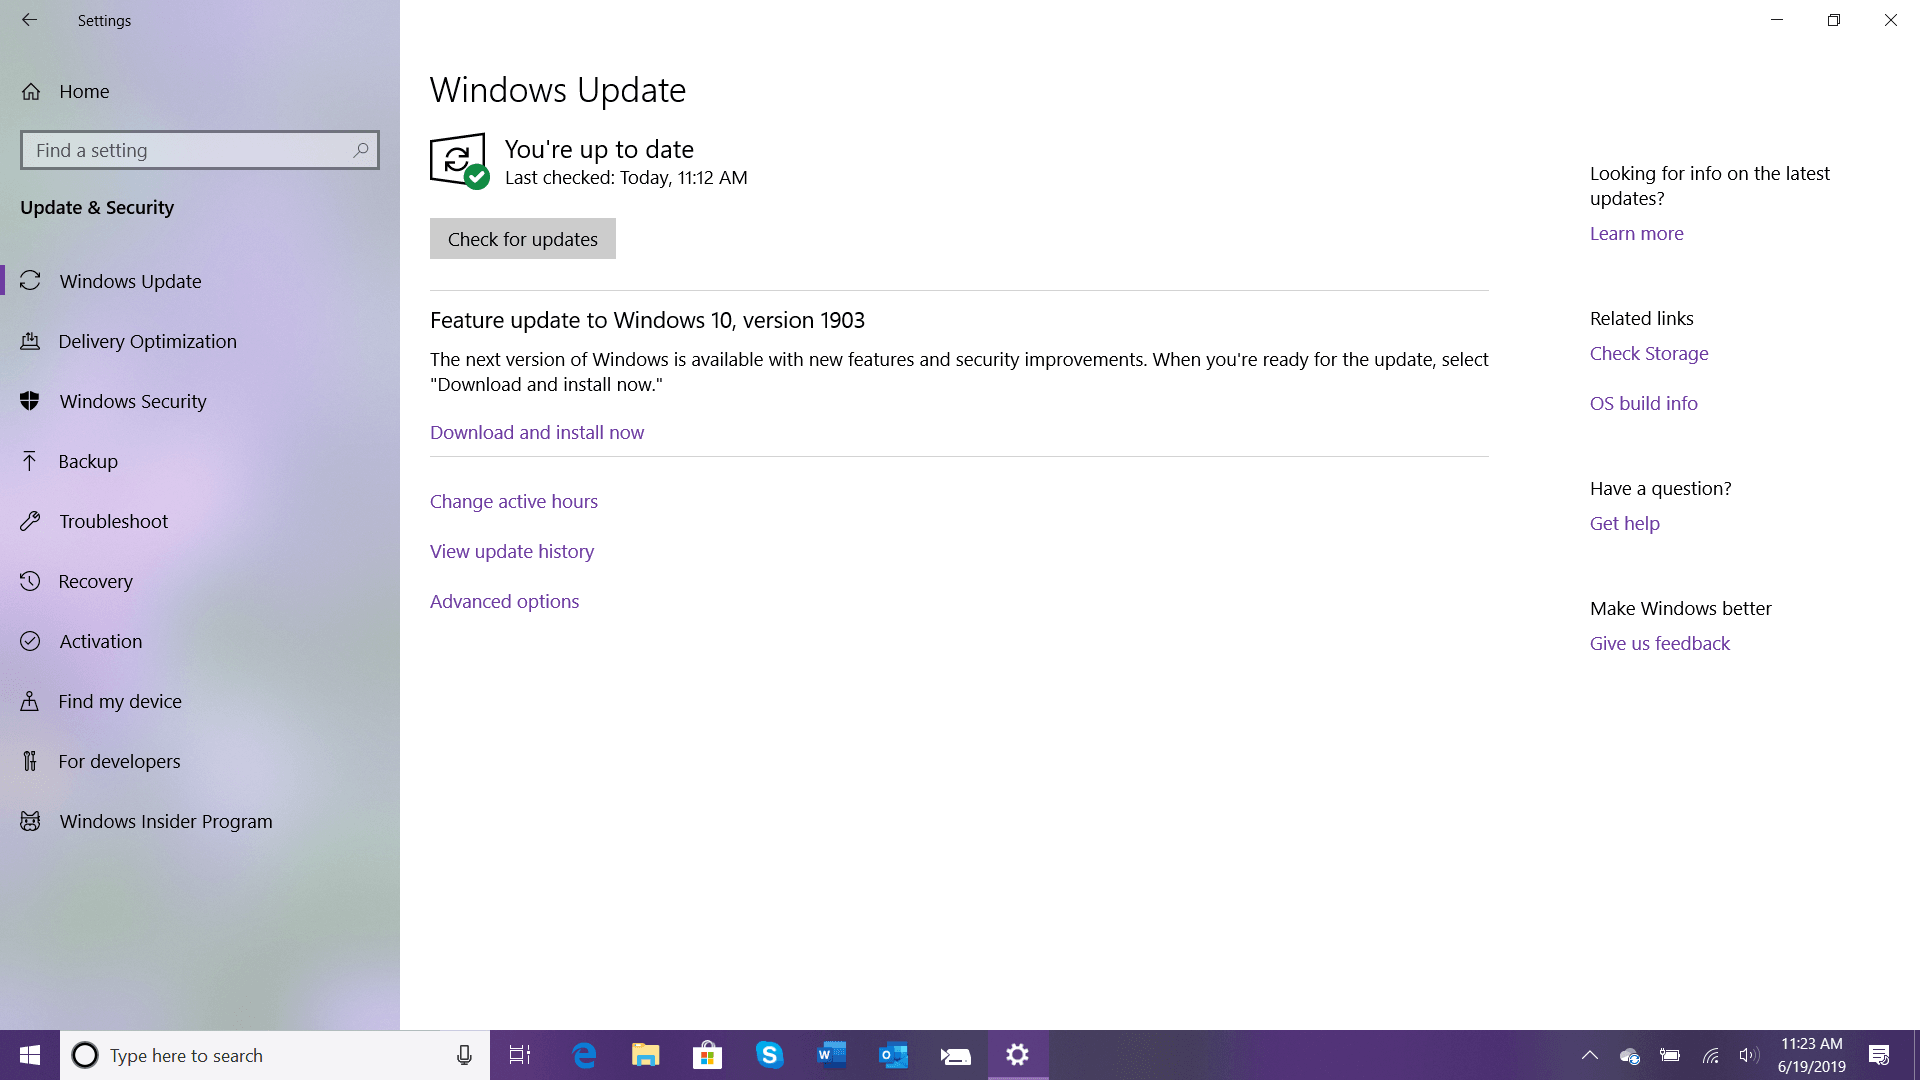 Windows Update Notice for Windows 10 Version 1903